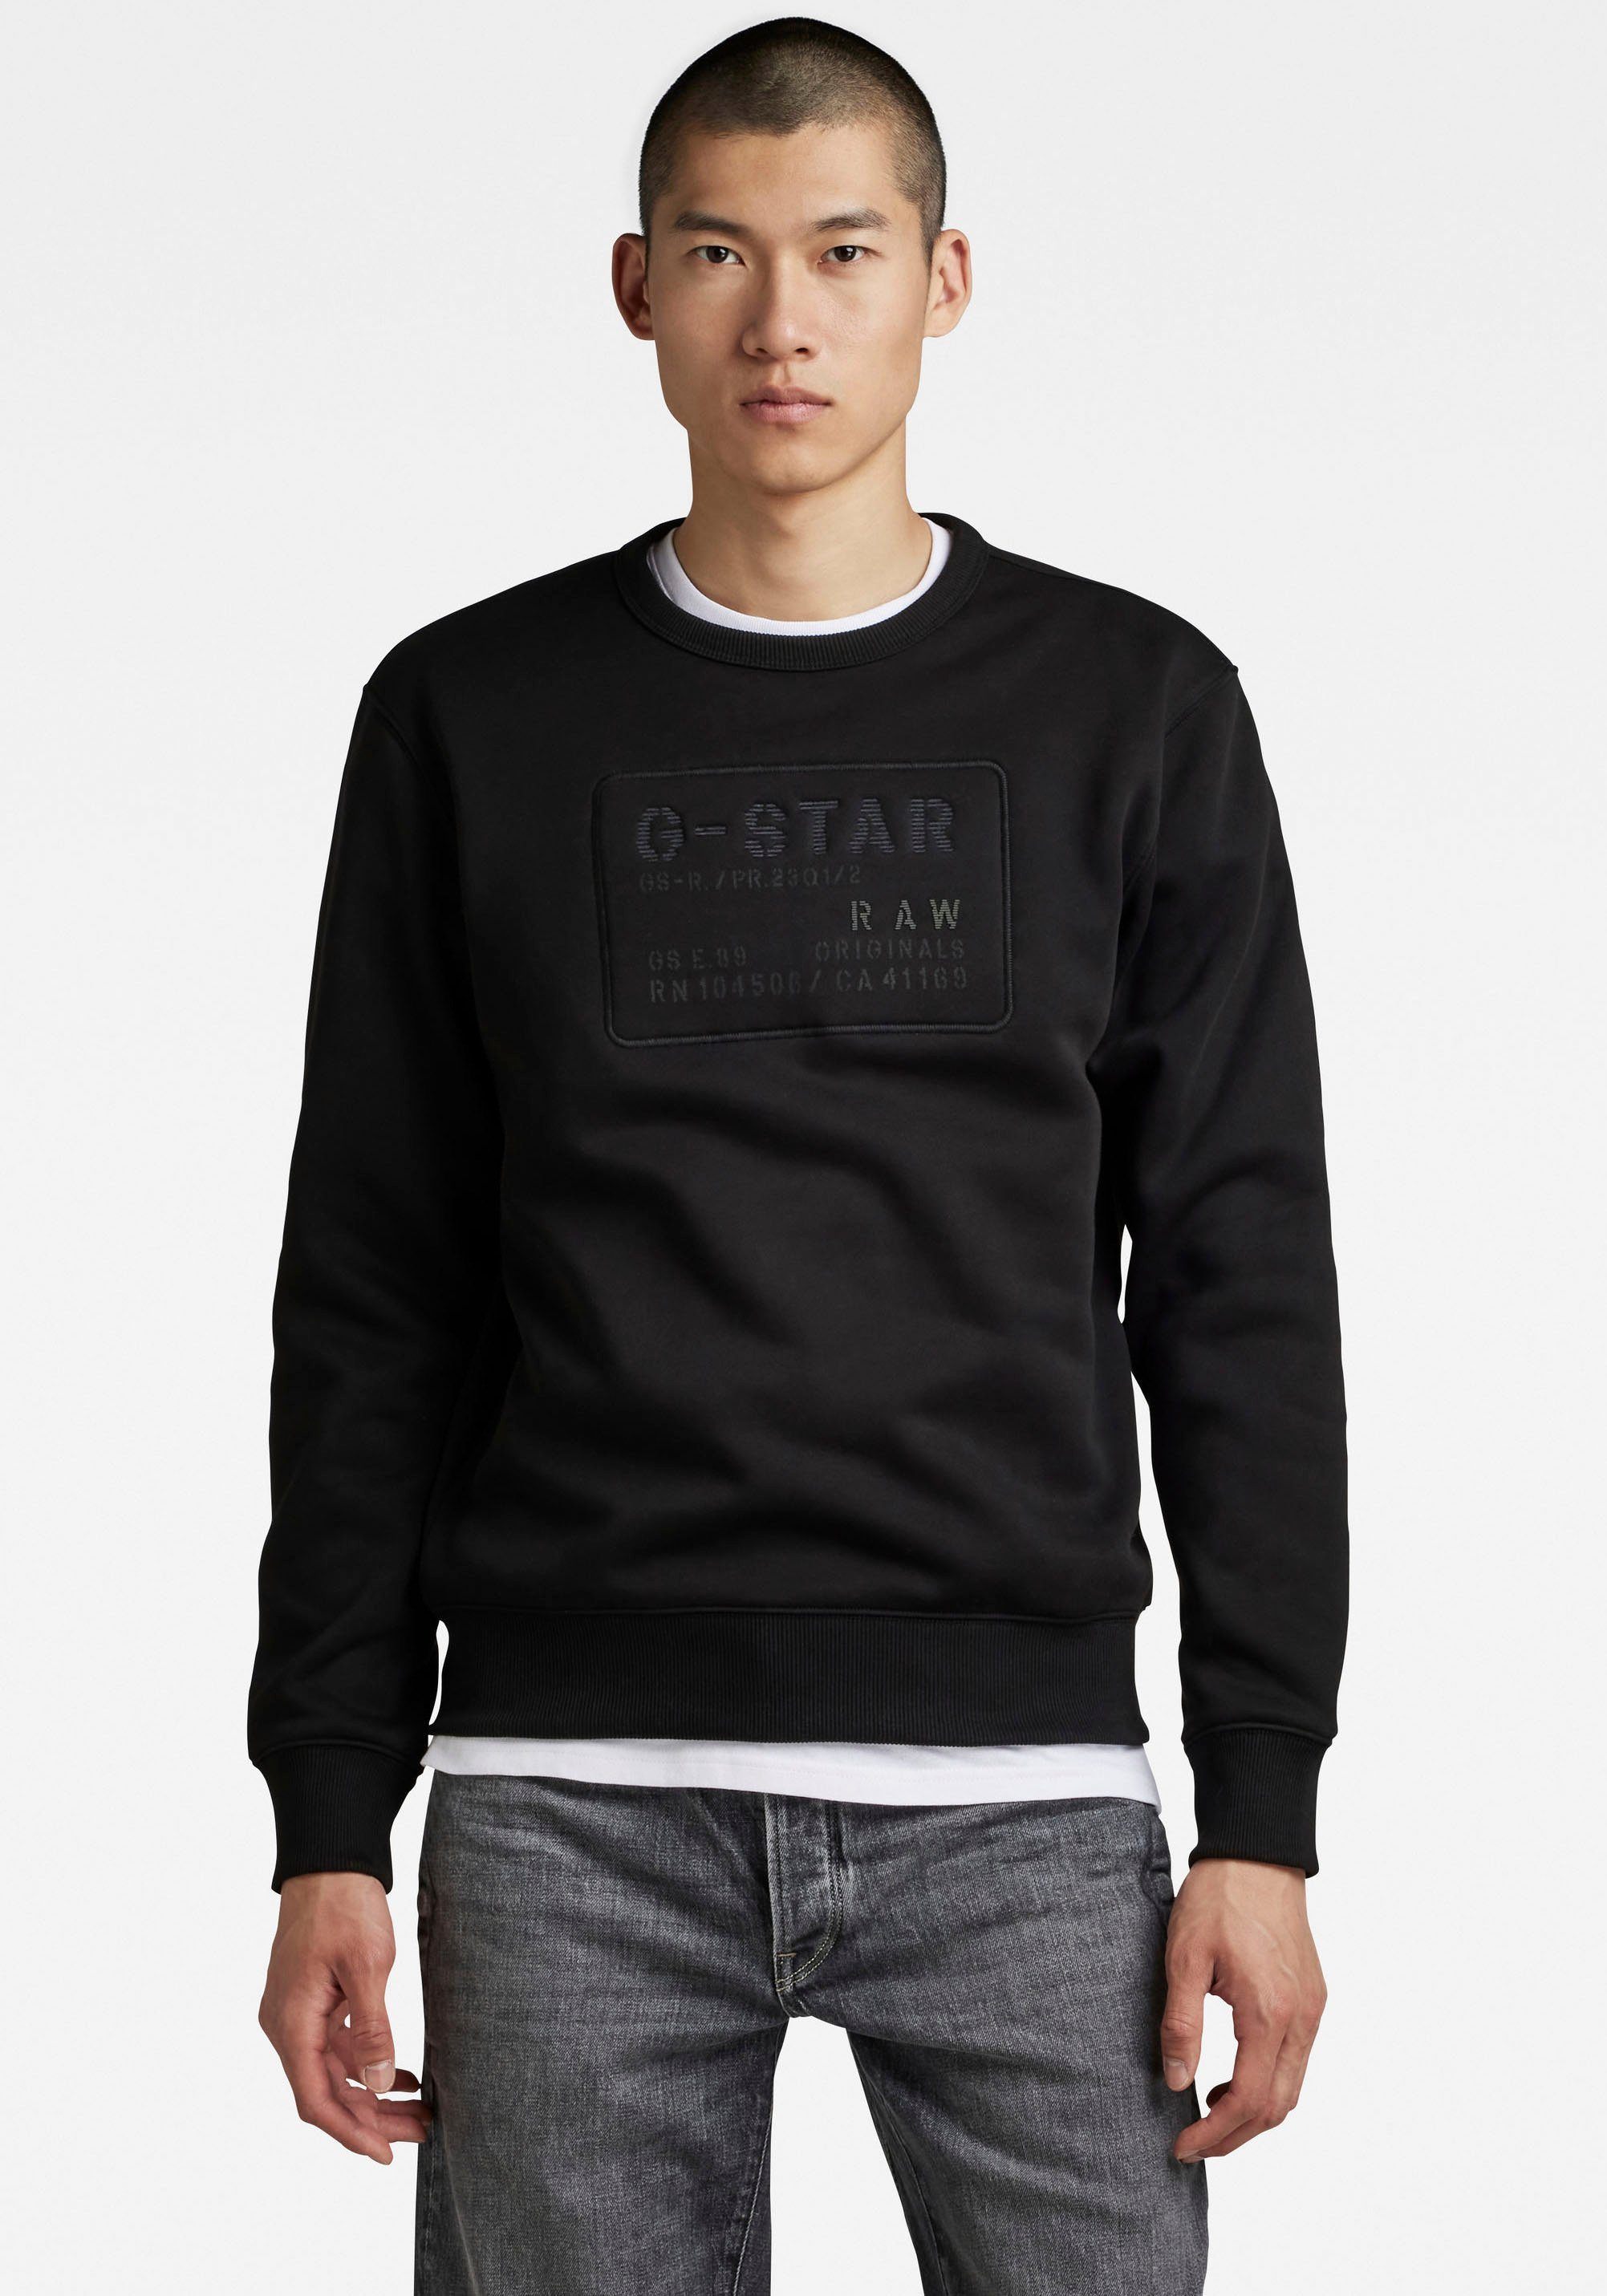 [Versand am selben Tag] G-Star RAW Sweatshirt Sweatshirt Originals Dark black